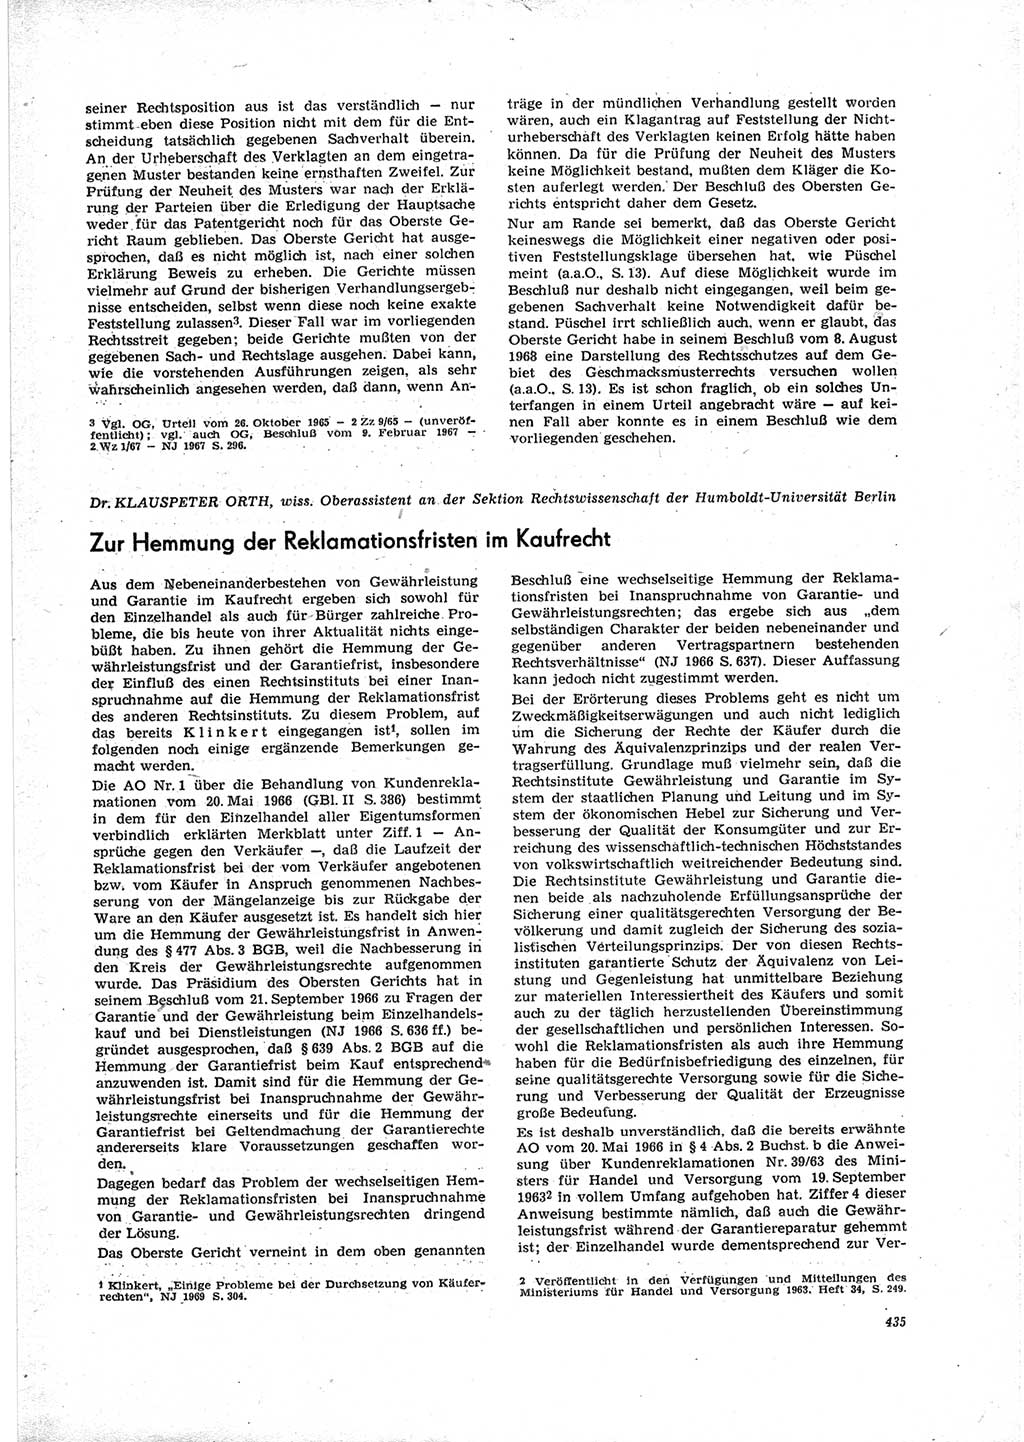 Neue Justiz (NJ), Zeitschrift für Recht und Rechtswissenschaft [Deutsche Demokratische Republik (DDR)], 23. Jahrgang 1969, Seite 435 (NJ DDR 1969, S. 435)